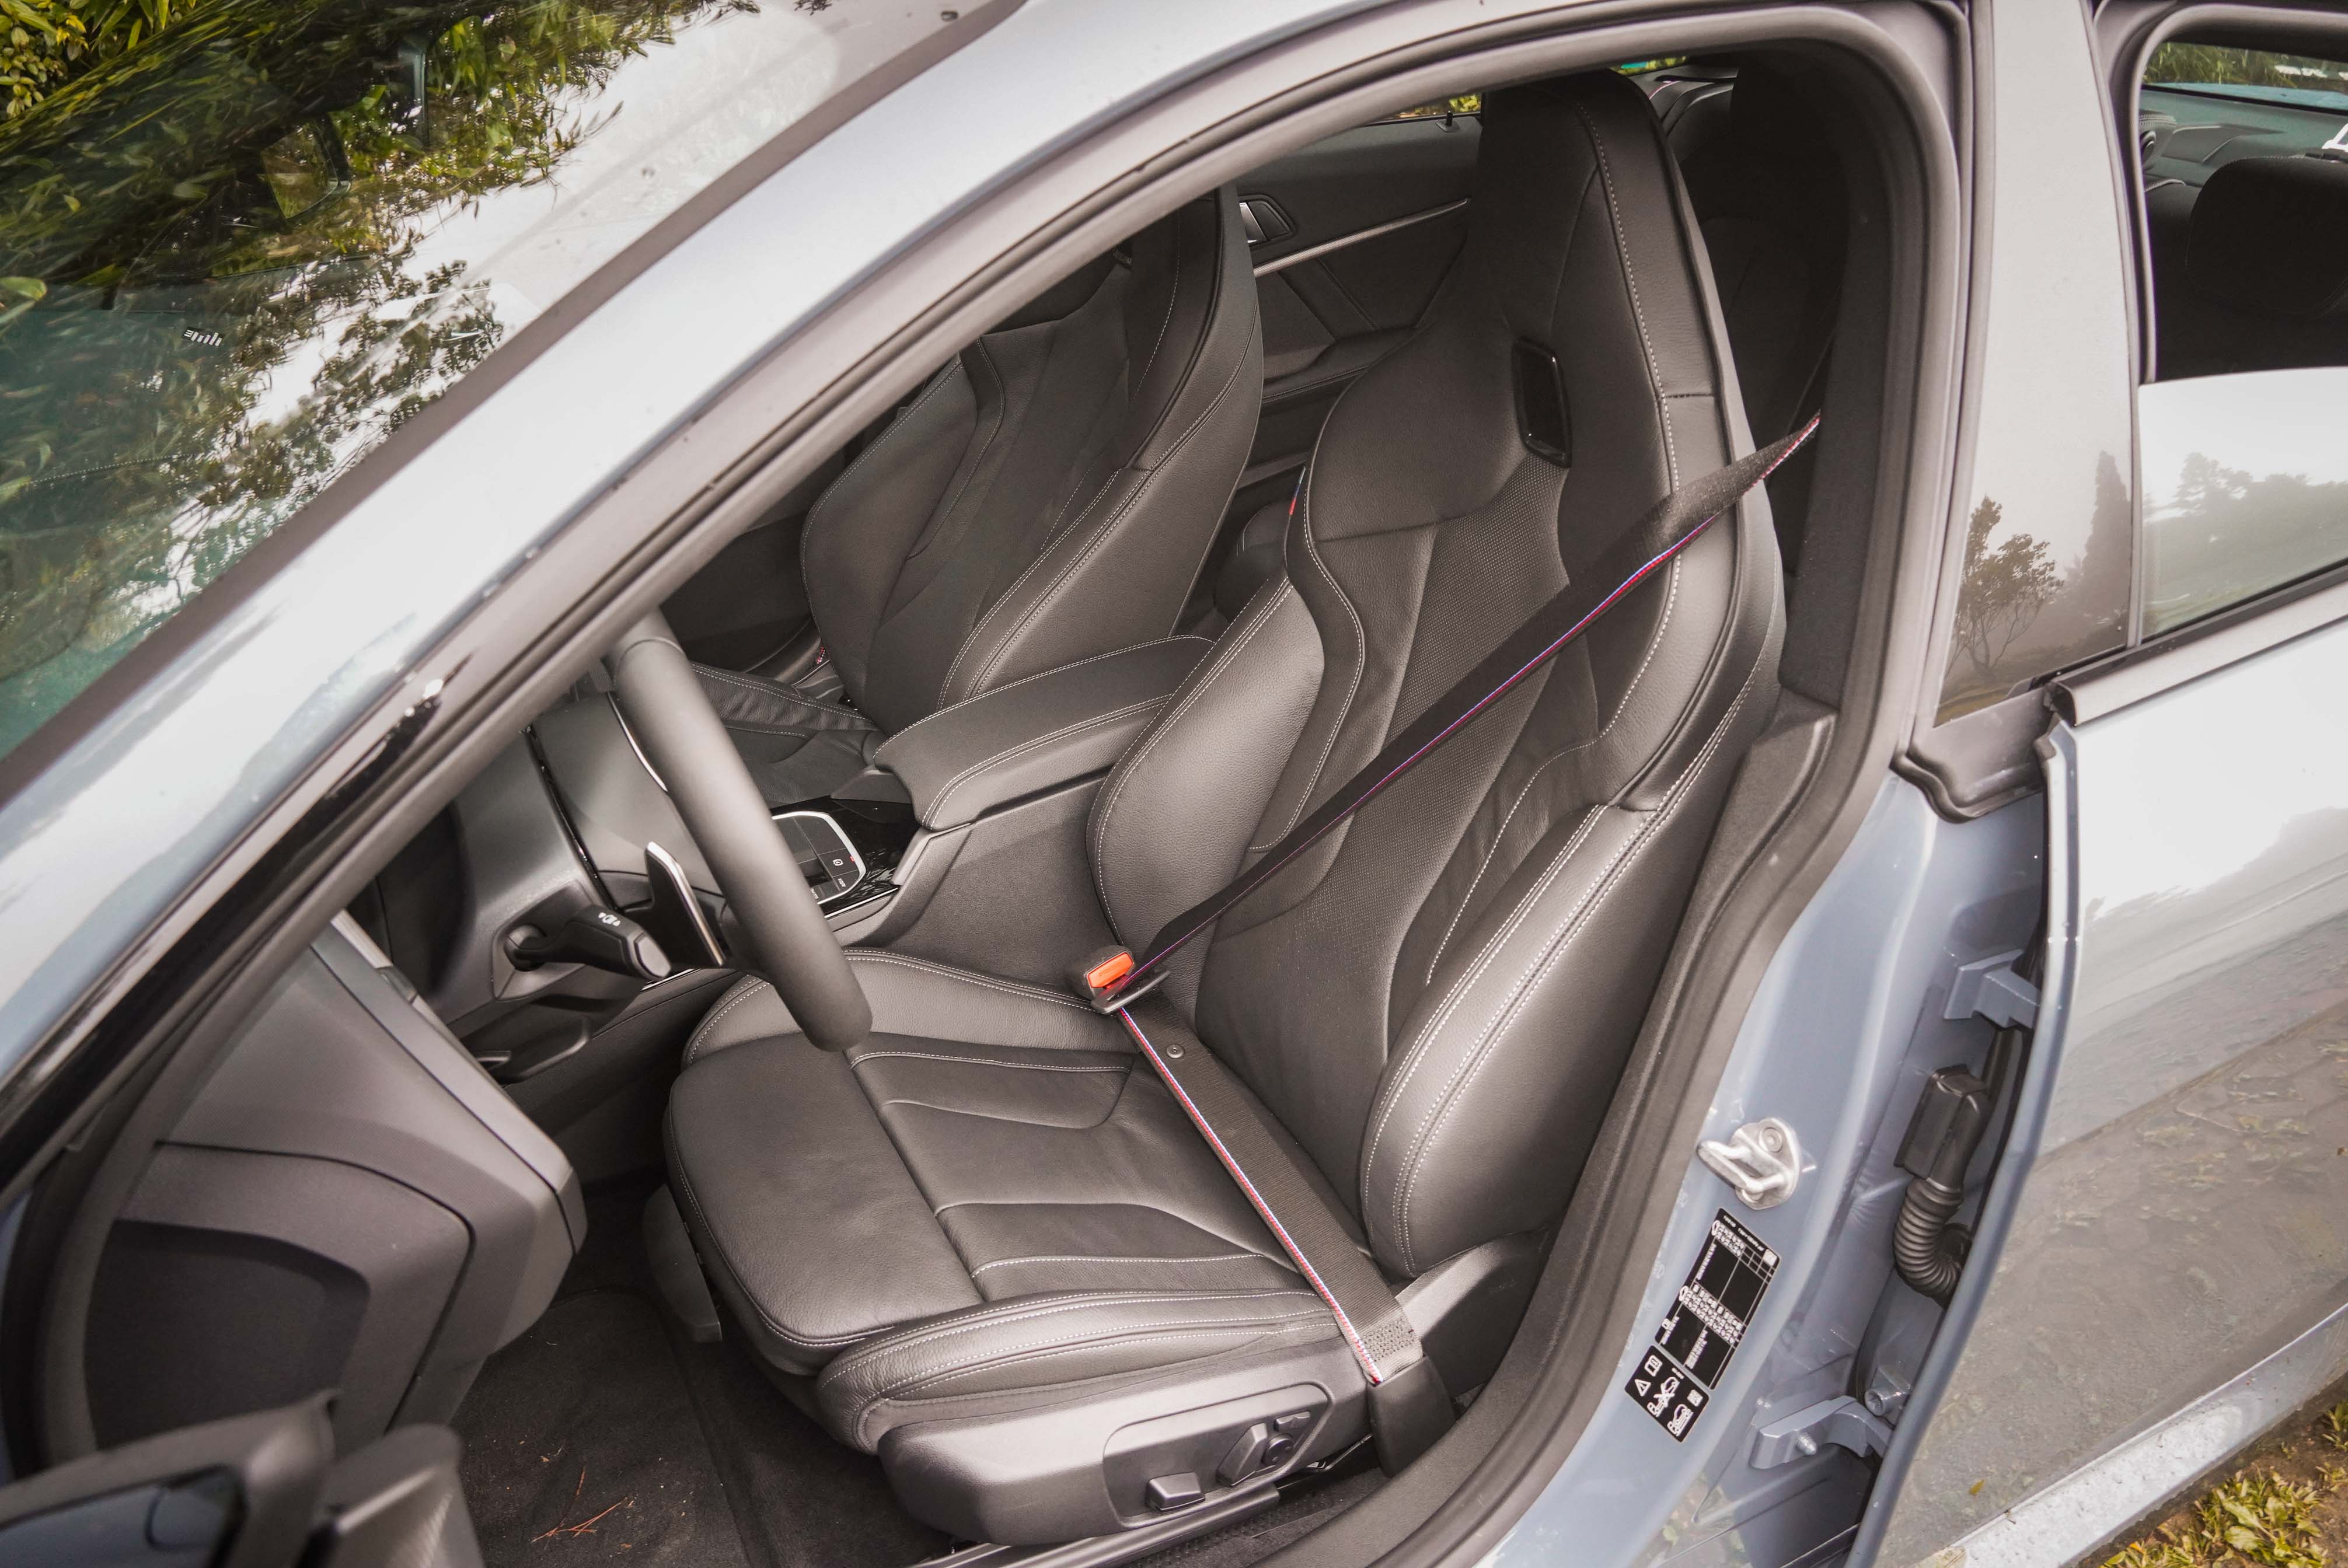 M款雙前座電動跑車座椅、M款縫線安全帶為標準配備。